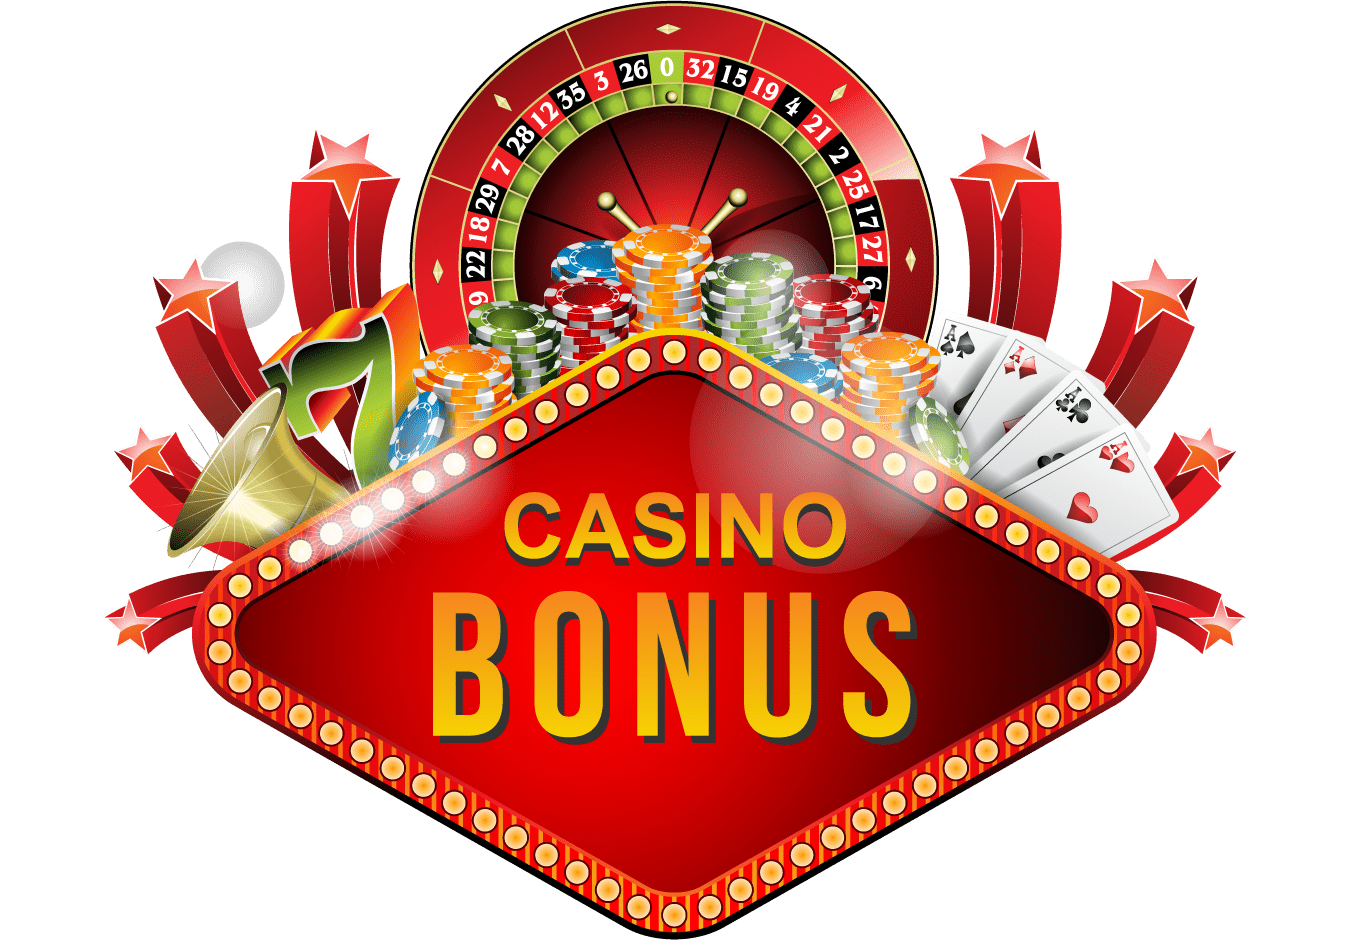 Casino Bonuser